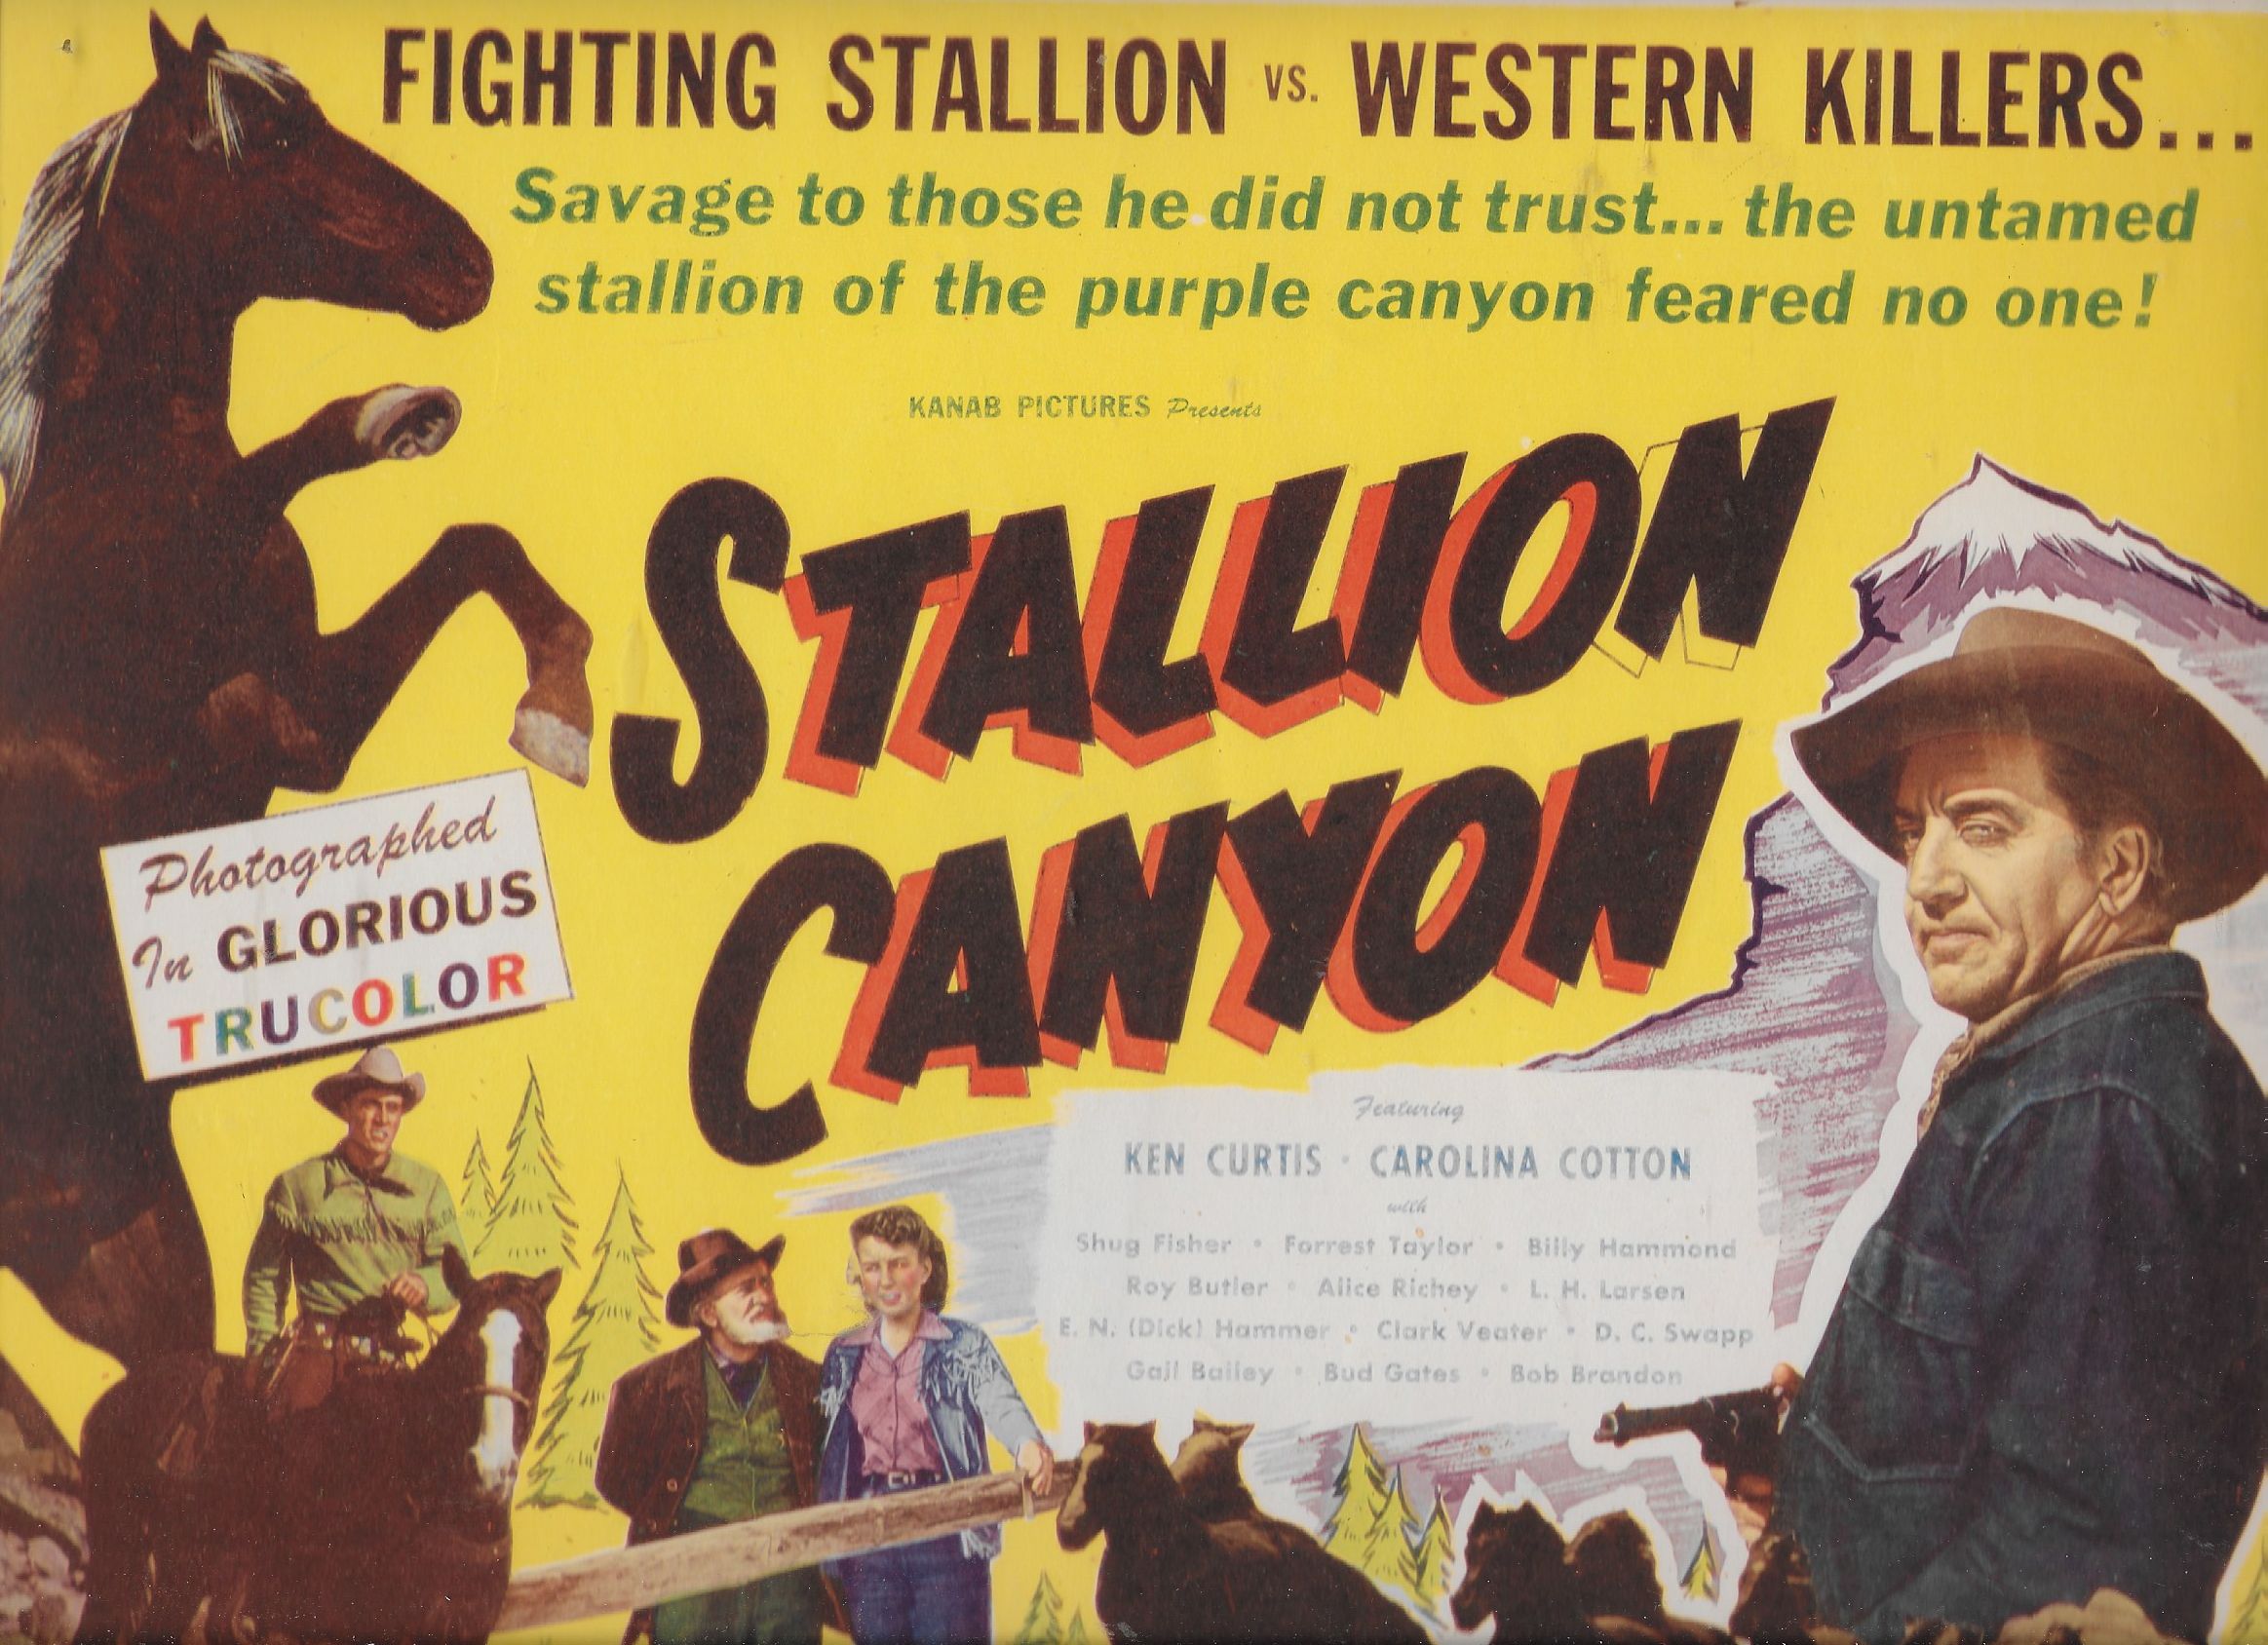 Stallion Canyon